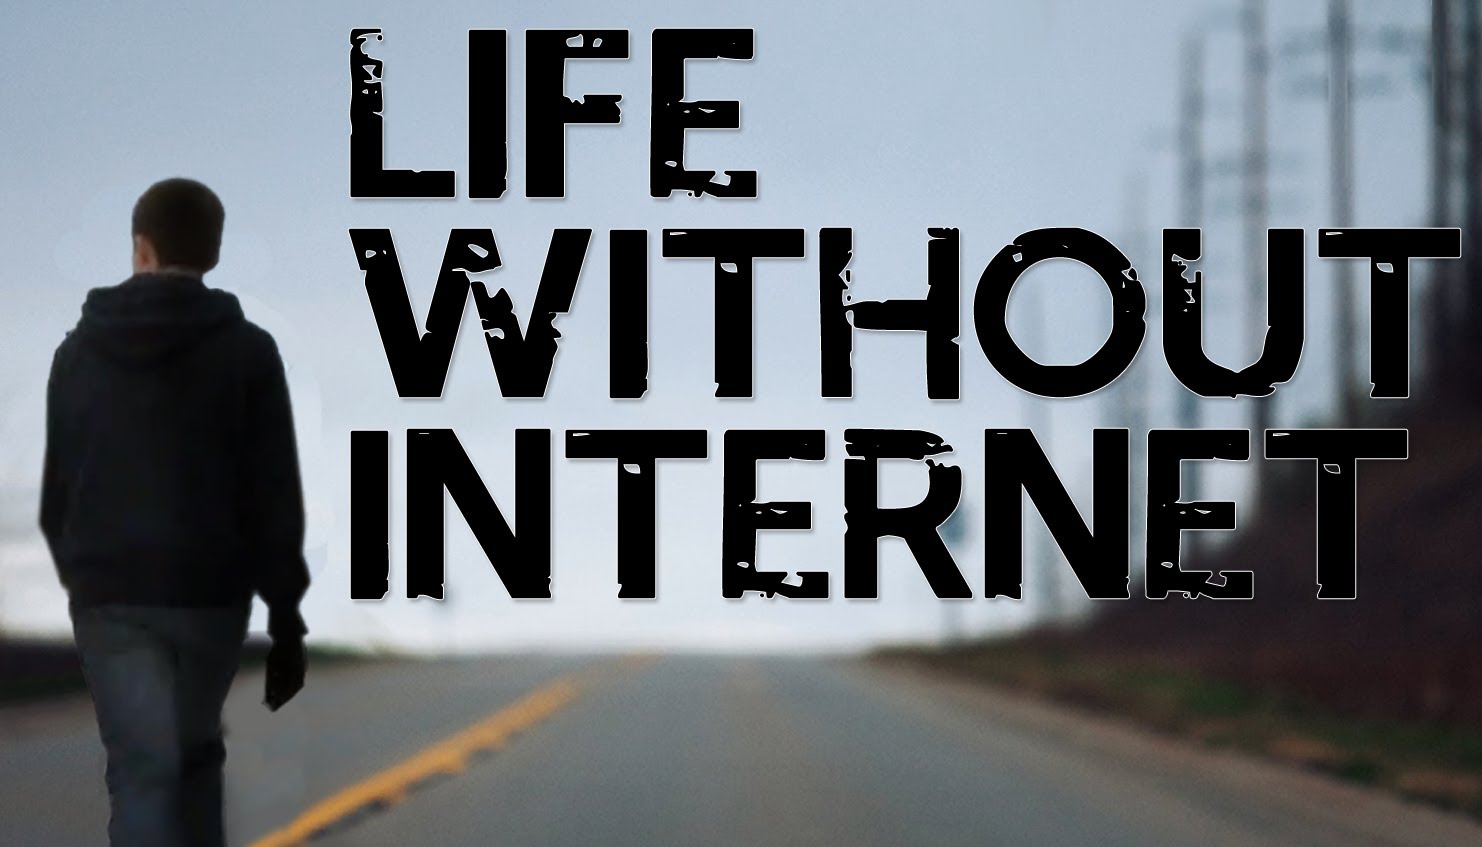 Αναρωτήθηκες ποτέ, πως θα ήταν η ζωή χωρίς ίντερνετ για ένα χρόνο;